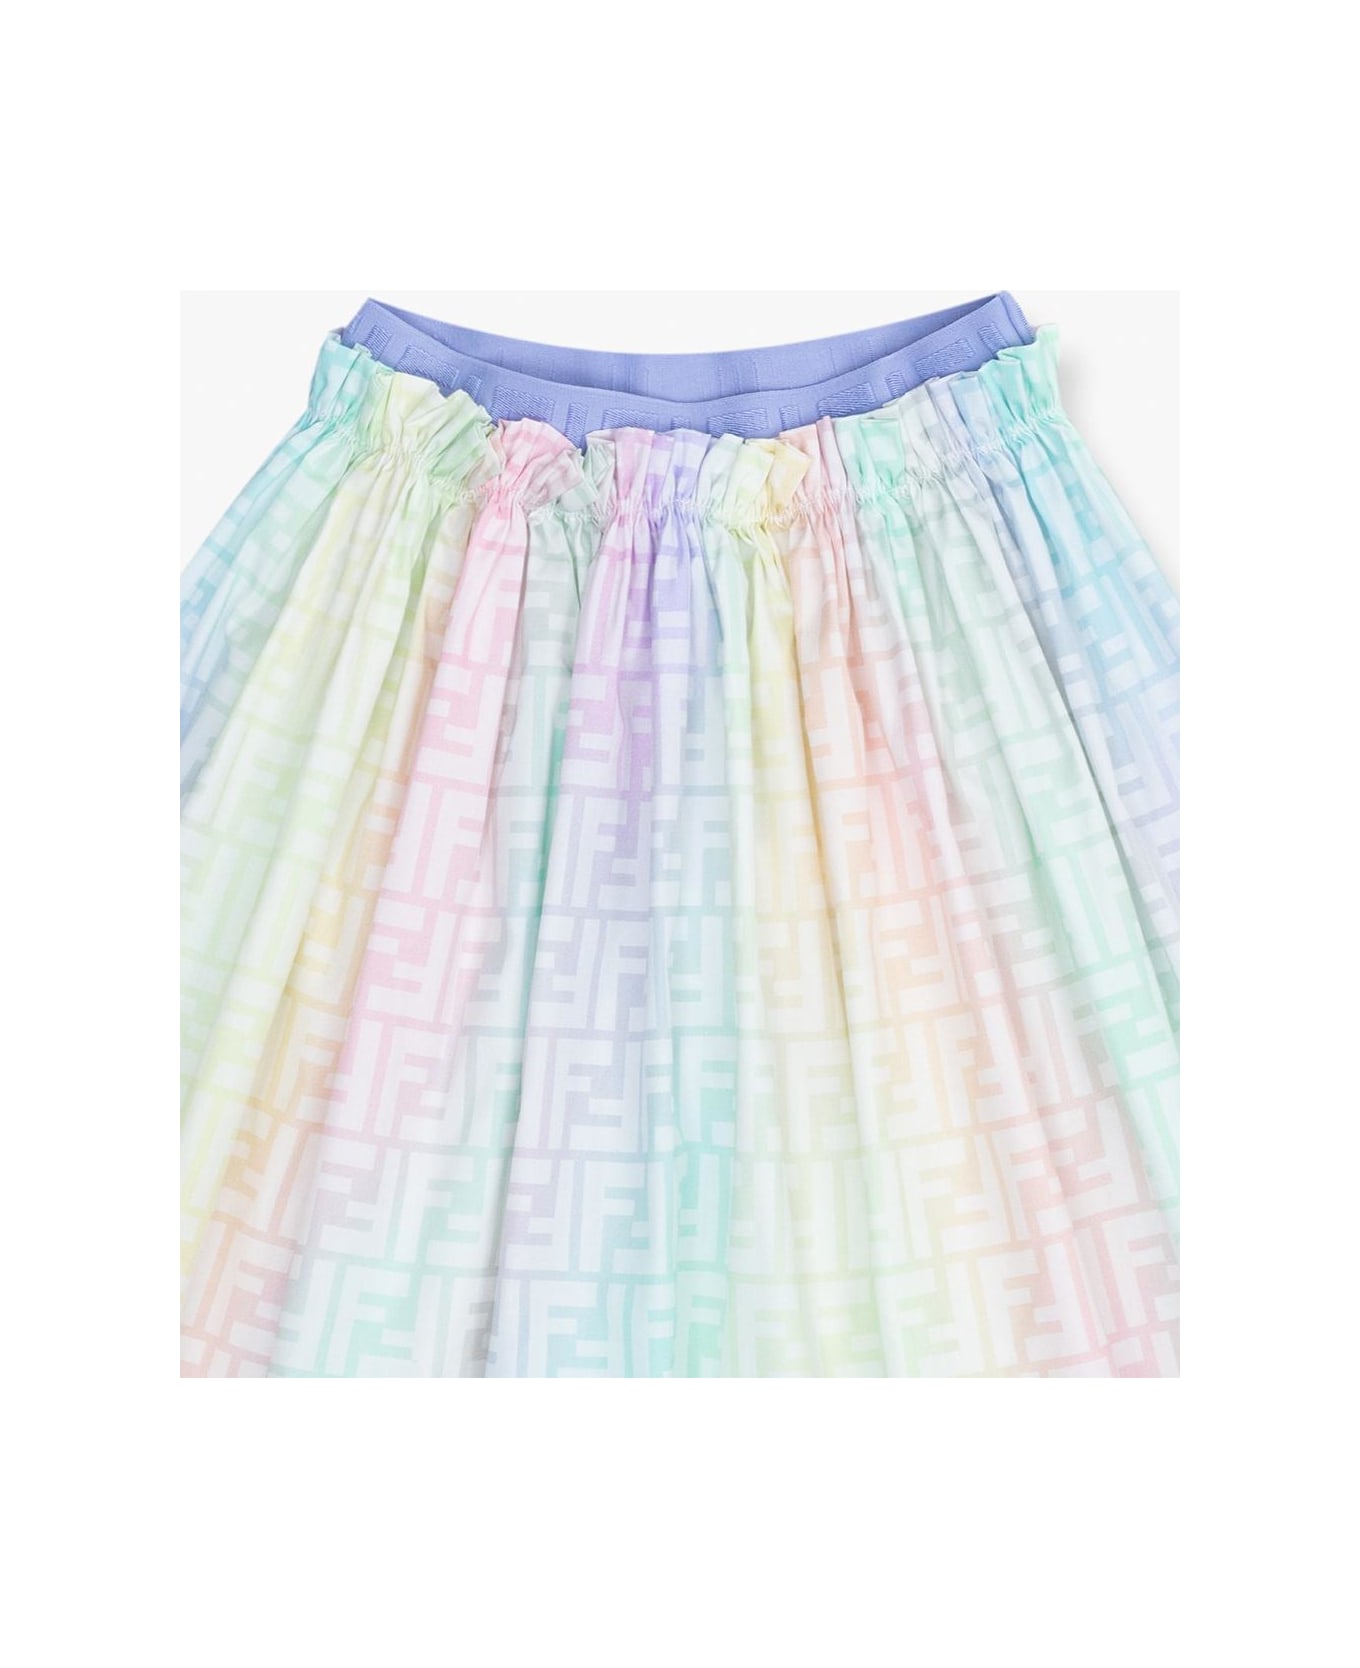 Fendi Skirt With Logo - Jdd Soho Multicolor